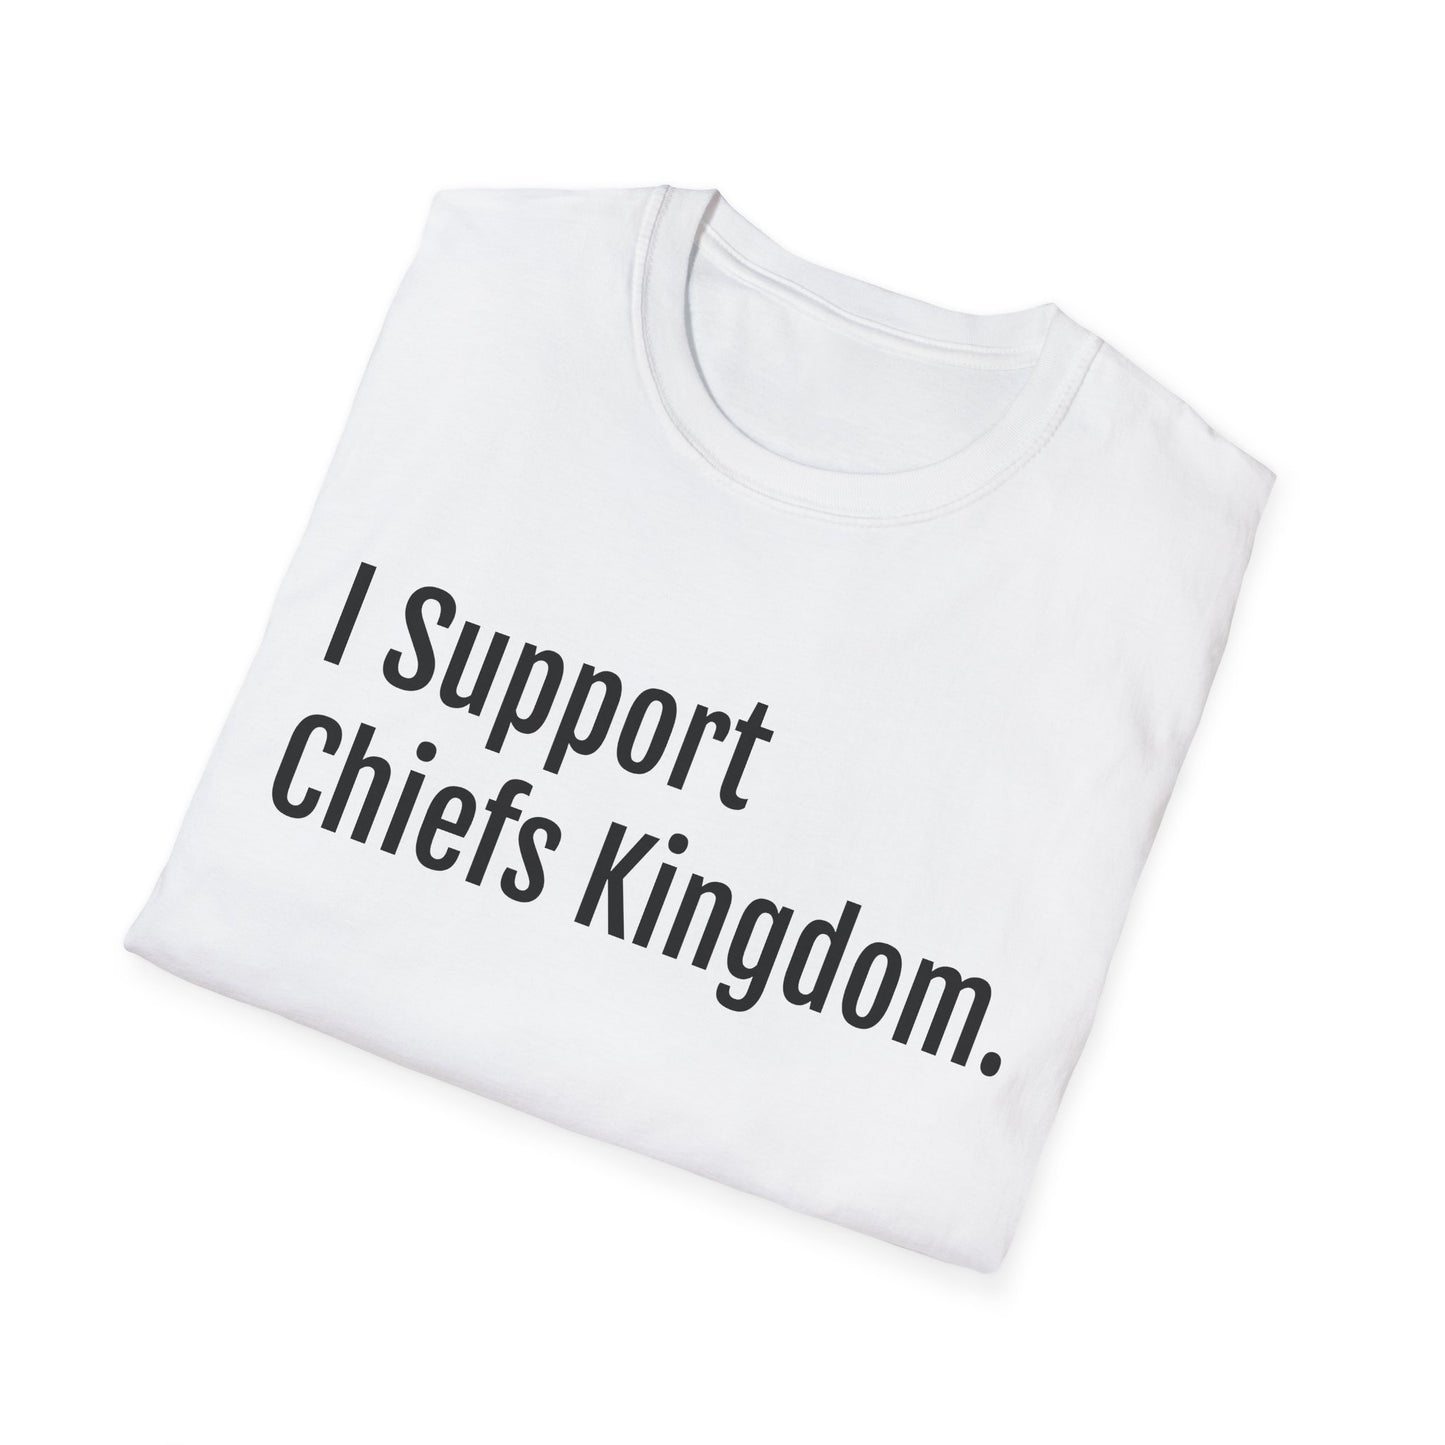 Chiefs Kingdom